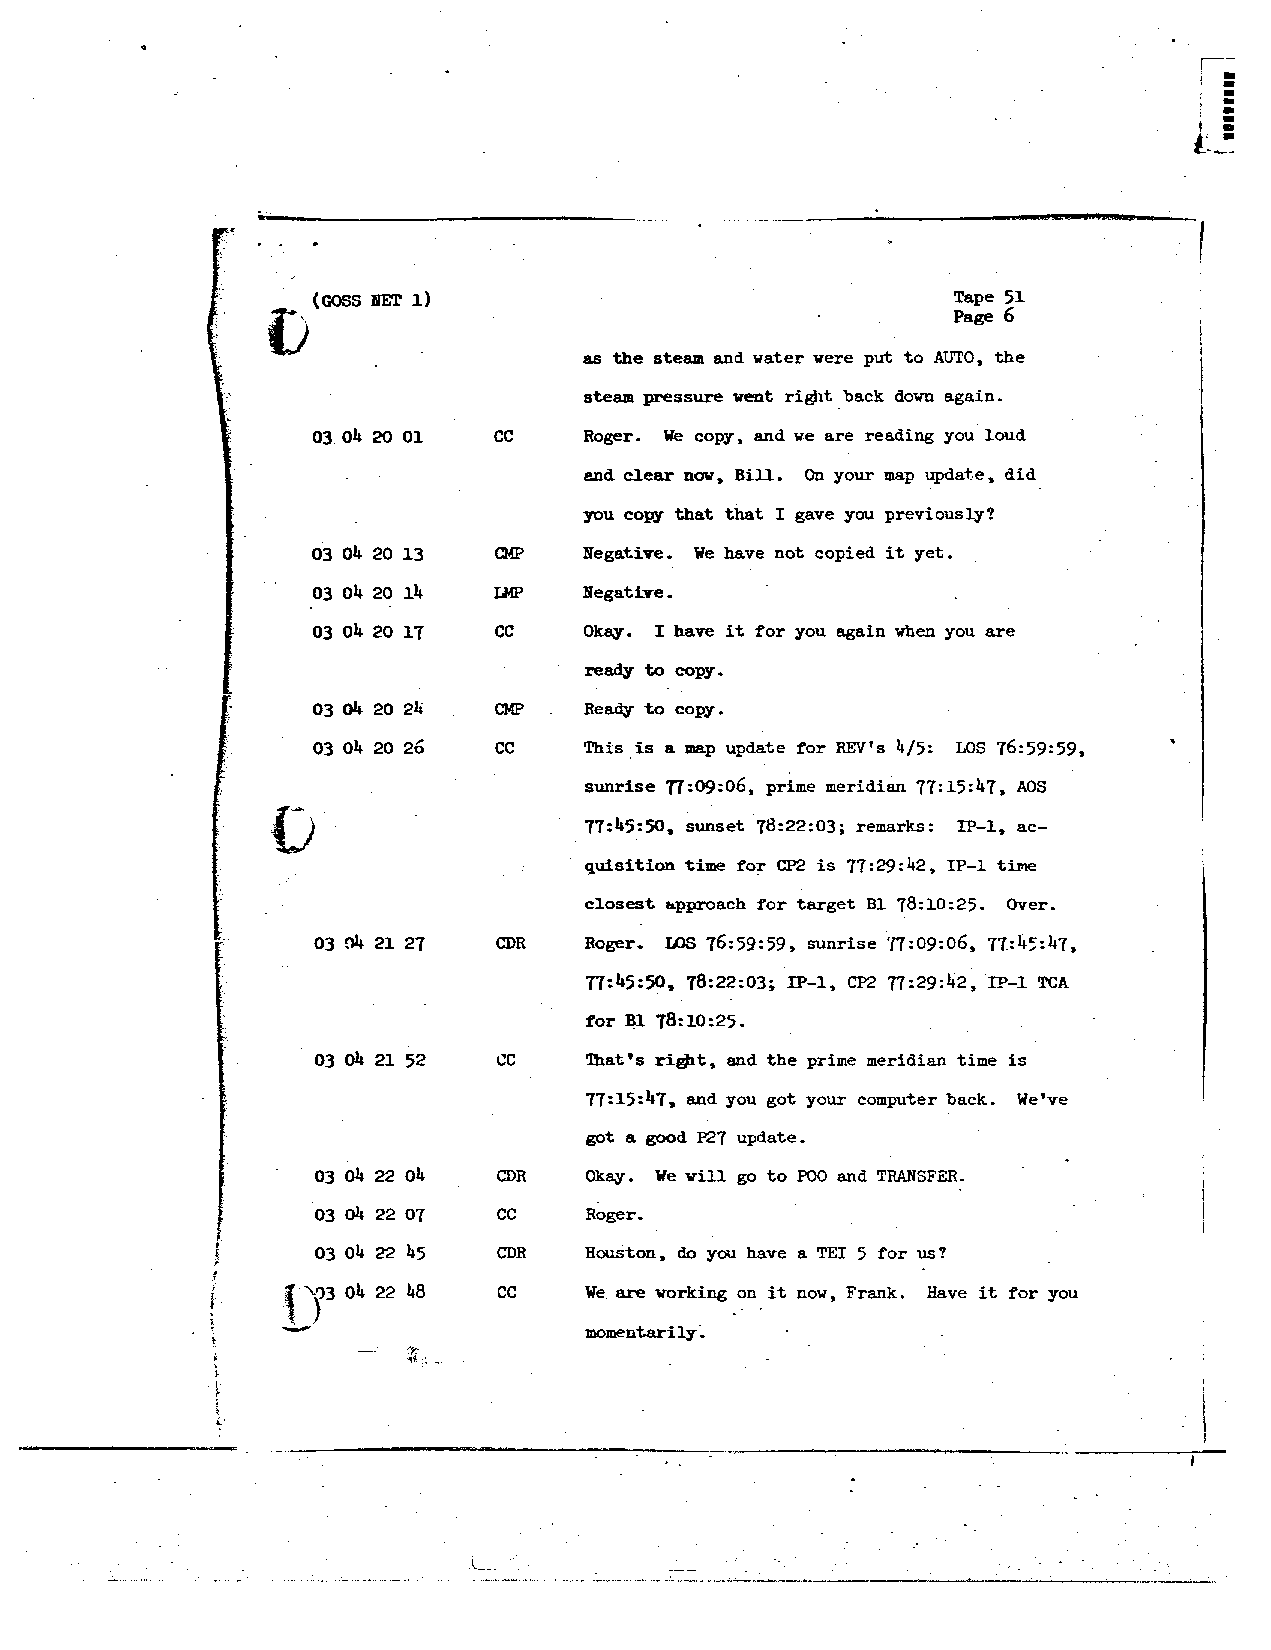 Page 406 of Apollo 8’s original transcript